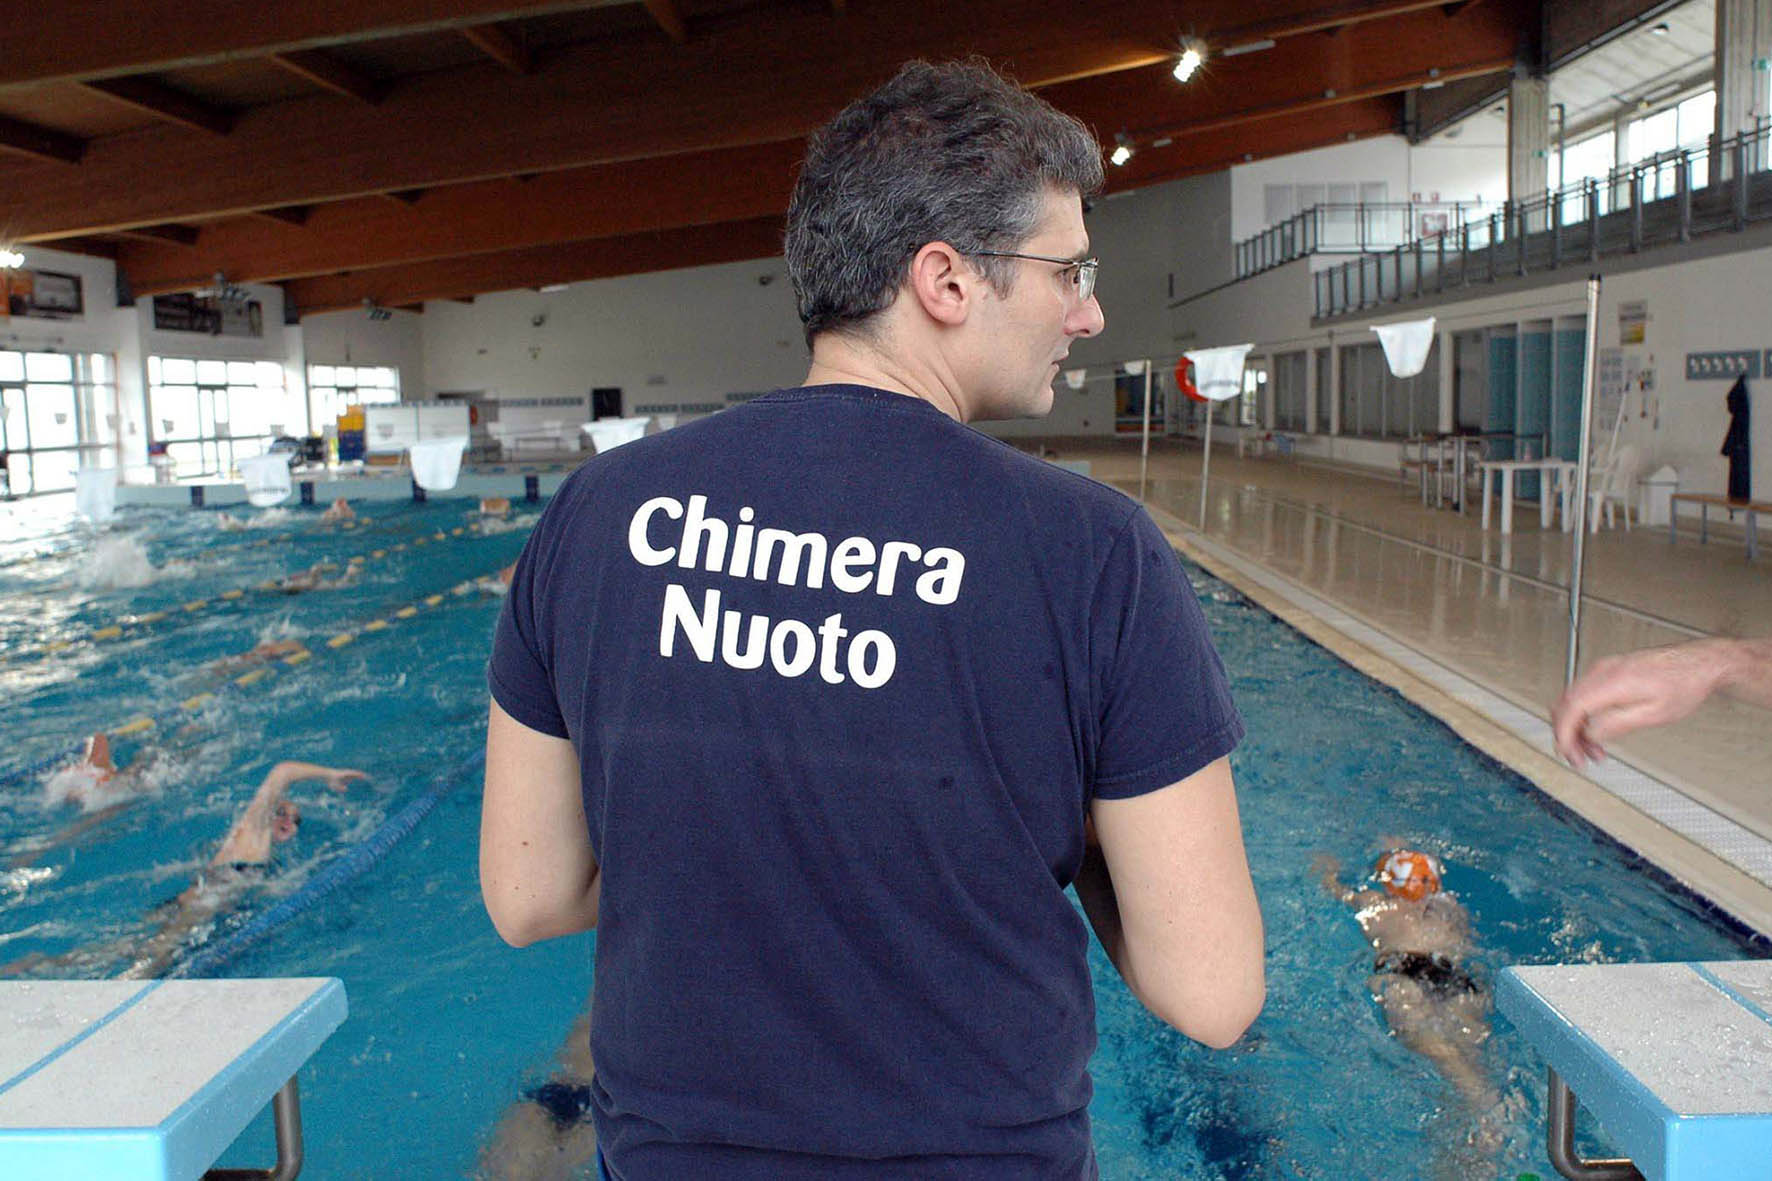 Chimera Nuoto: un incontro on-line per approfondire il nuoto del domani